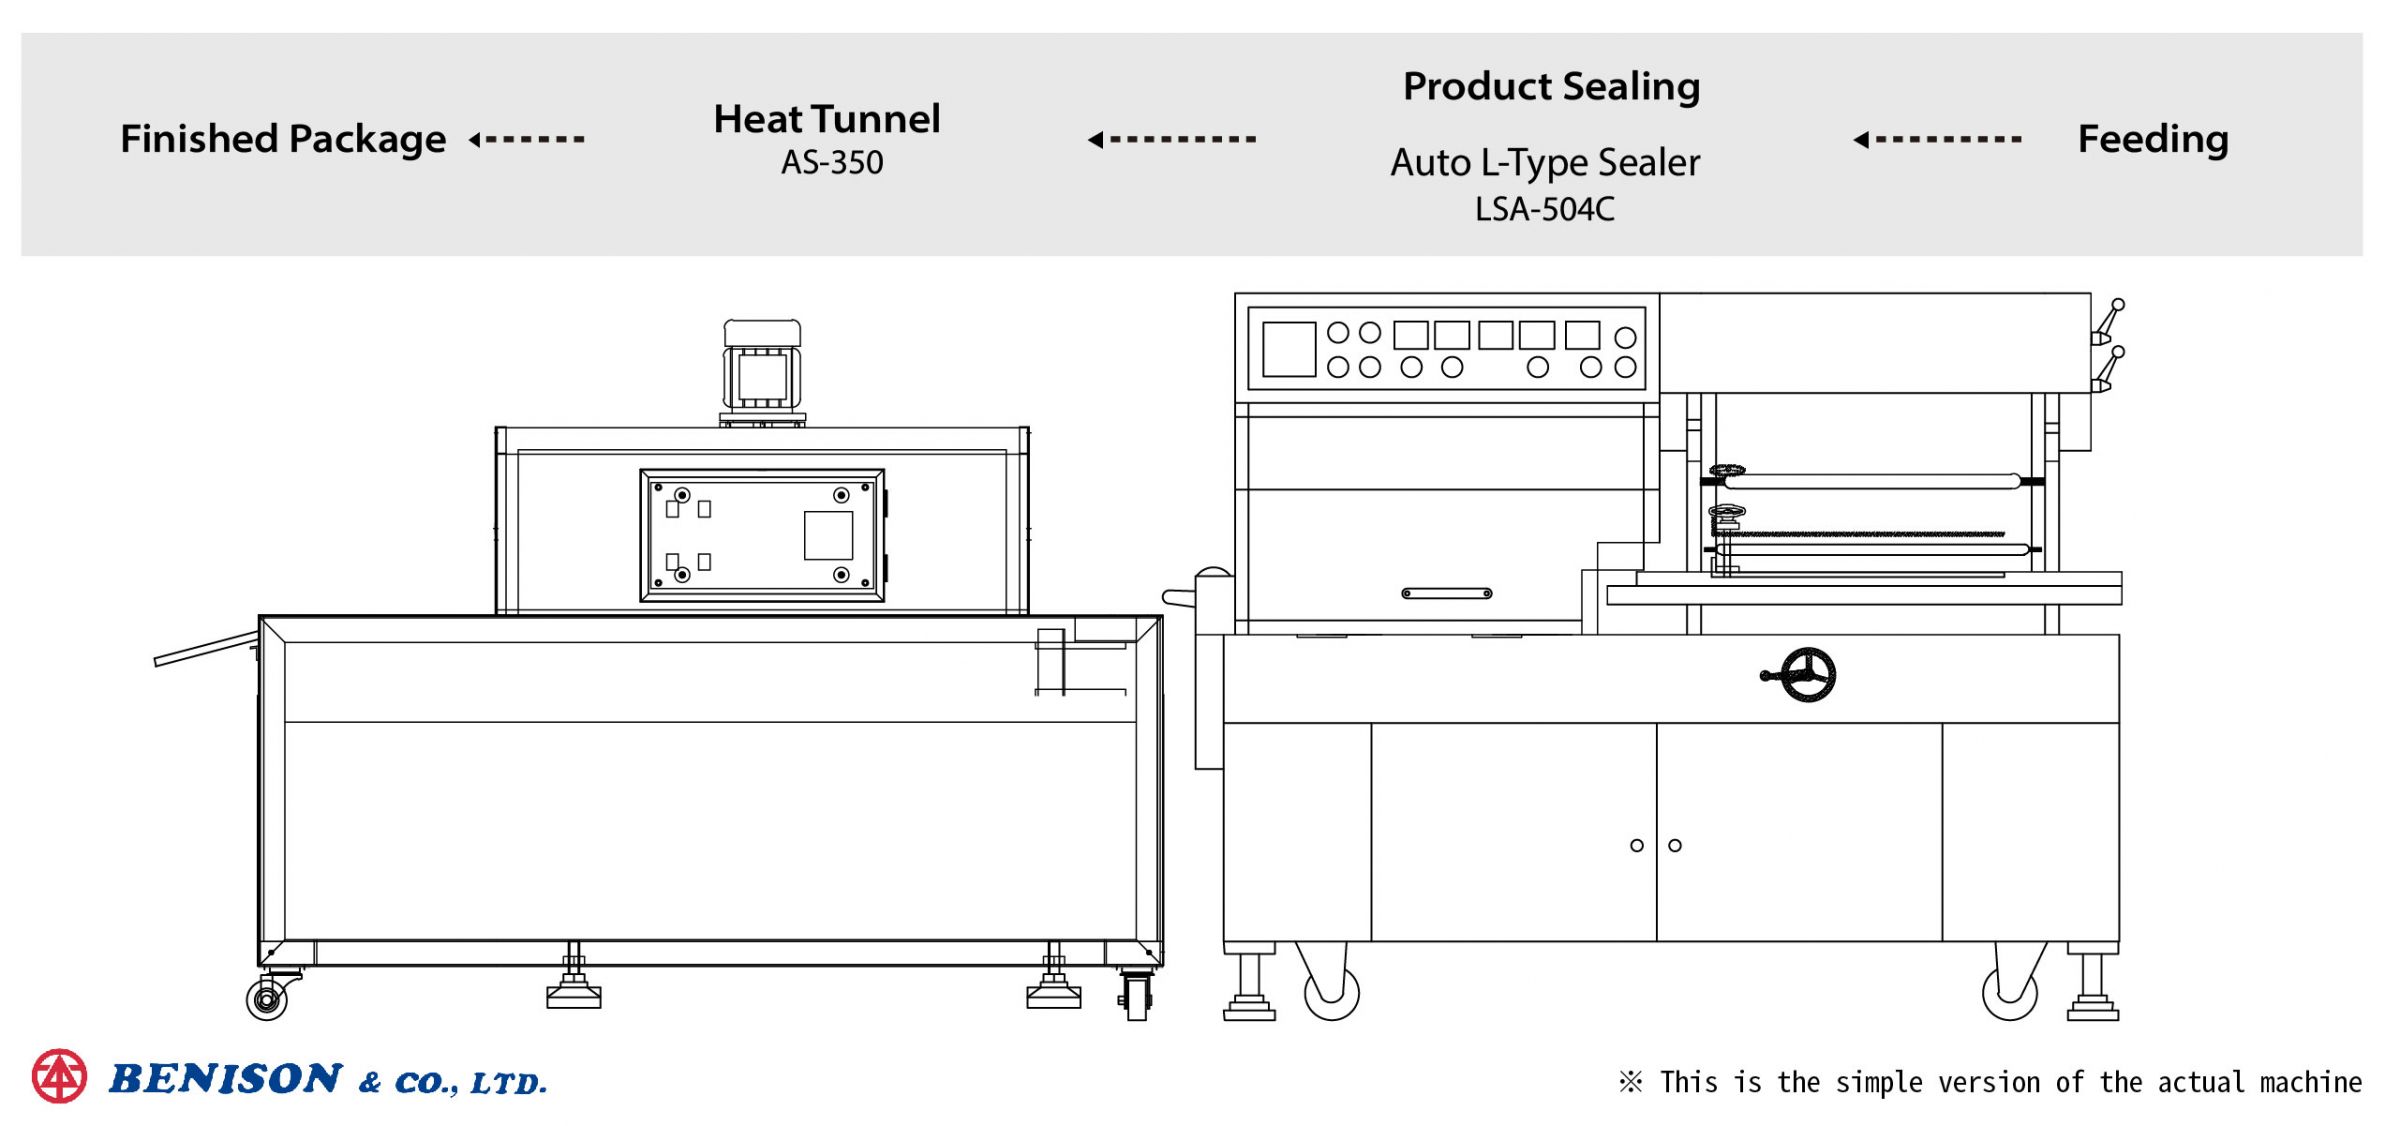 五金產品生產線規劃, LSA-504C+AS-350